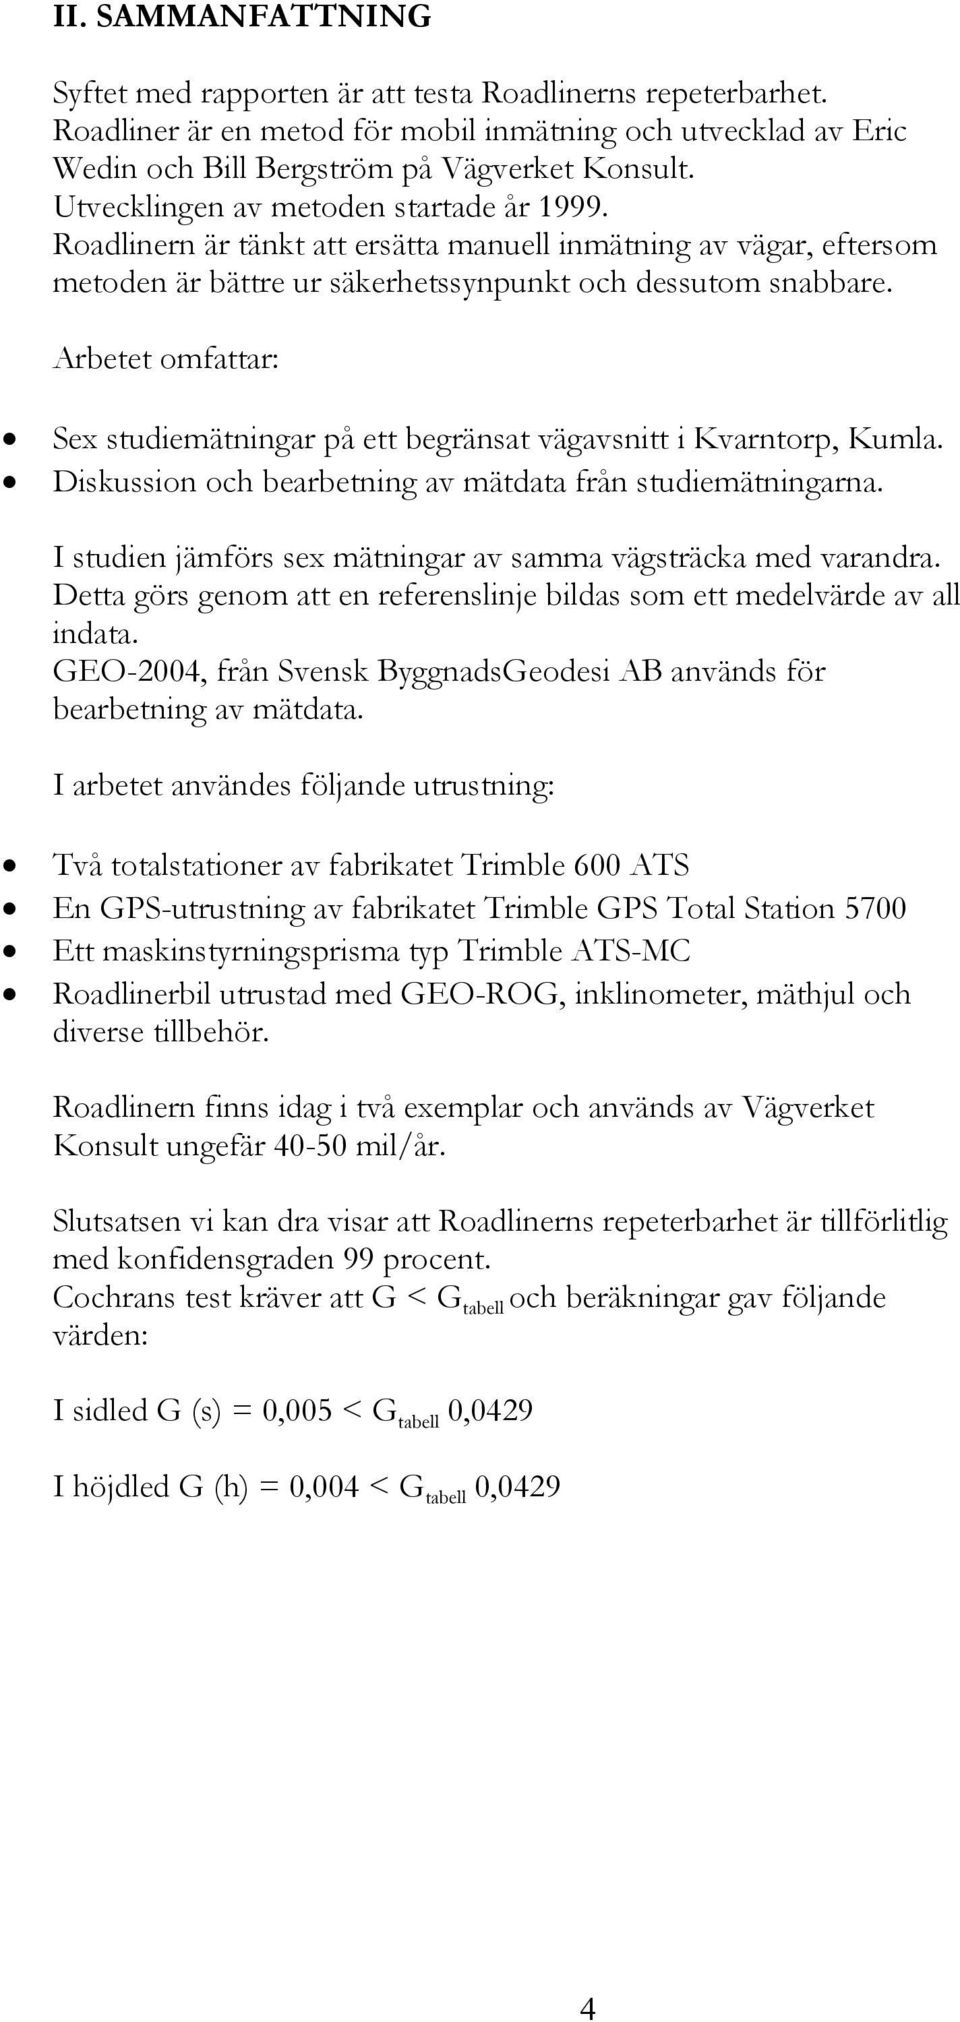 Arbetet omfattar: Sex tudiemätningar på ett begränat vägavnitt i Kvarntorp, Kumla. Dikuion oc bearbetning av mätdata från tudiemätningarna. I tudien jämför ex mätningar av amma vägträcka med varandra.